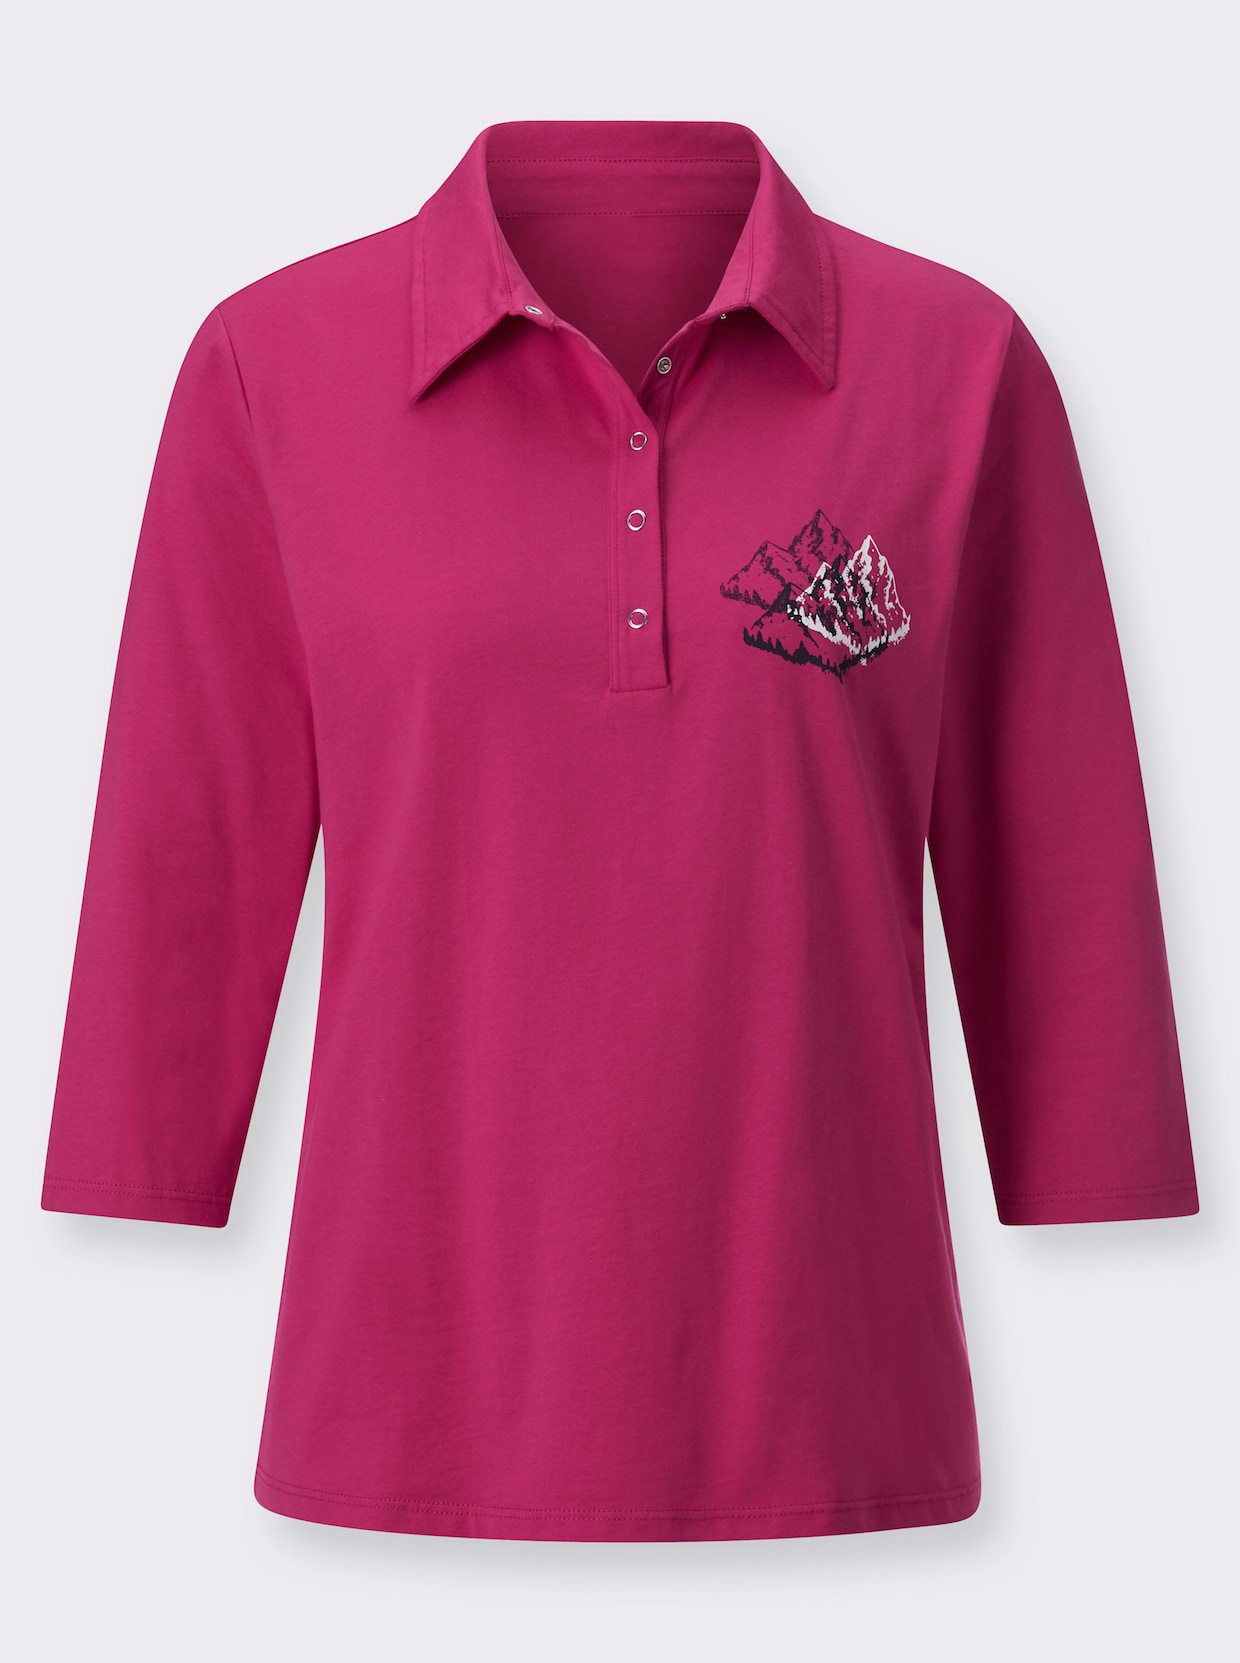 Poloshirt - pink